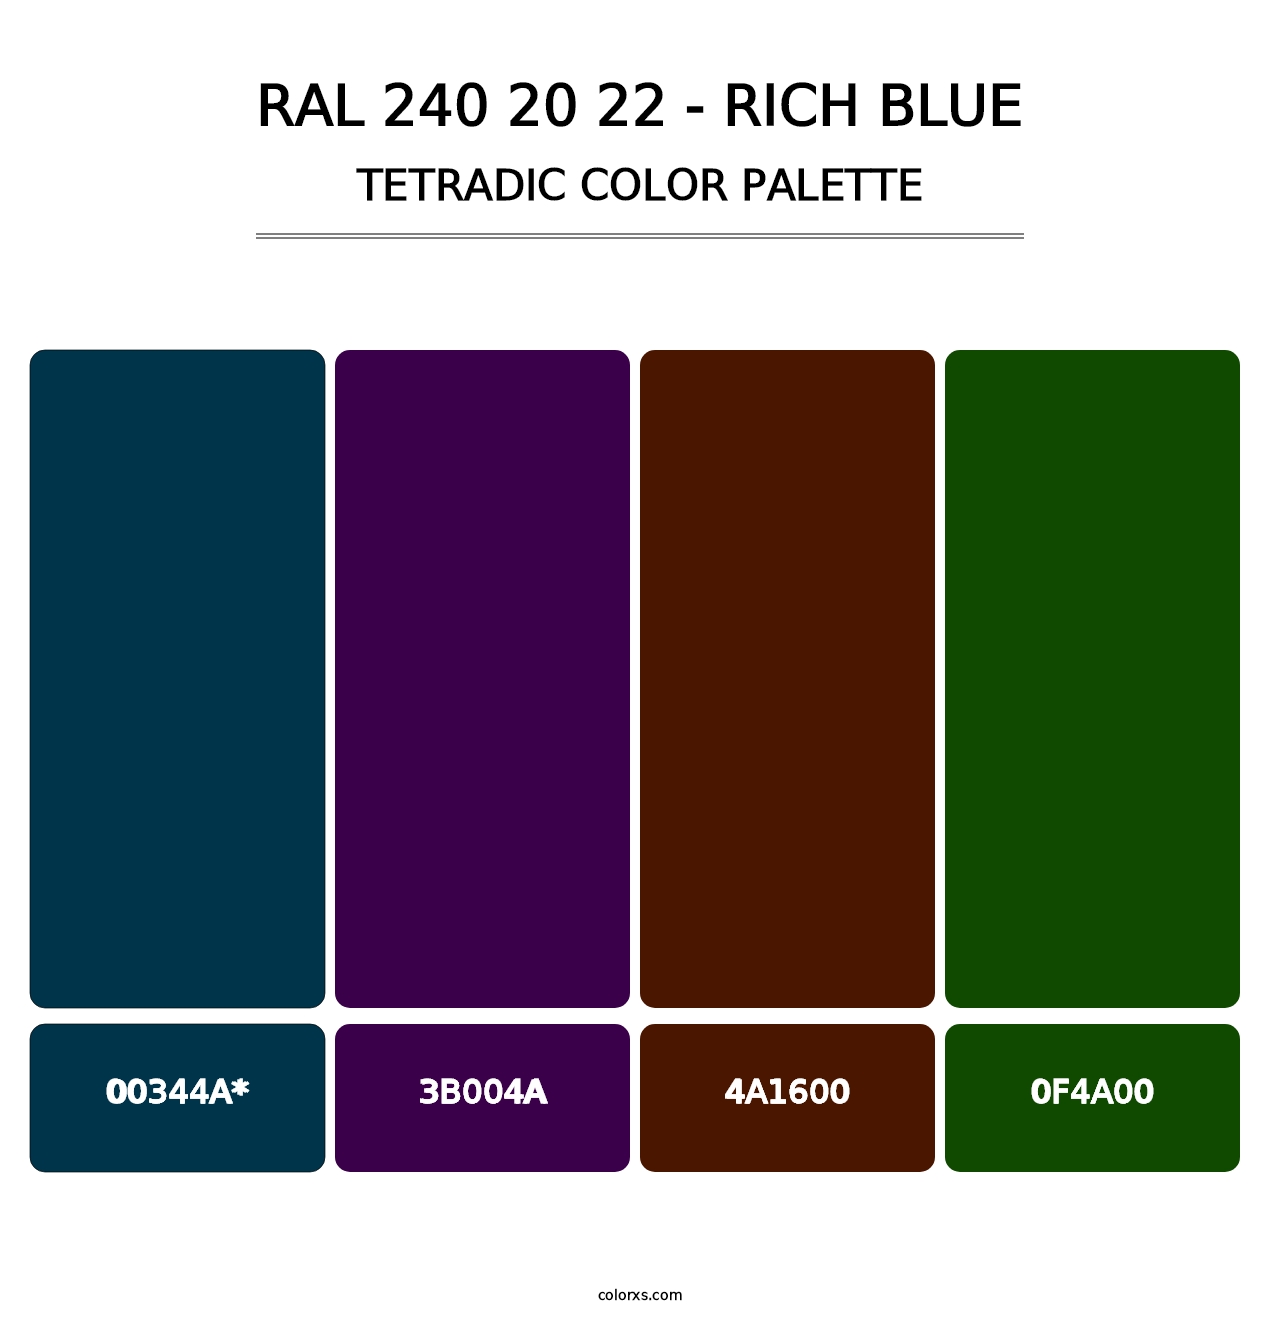 RAL 240 20 22 - Rich Blue - Tetradic Color Palette